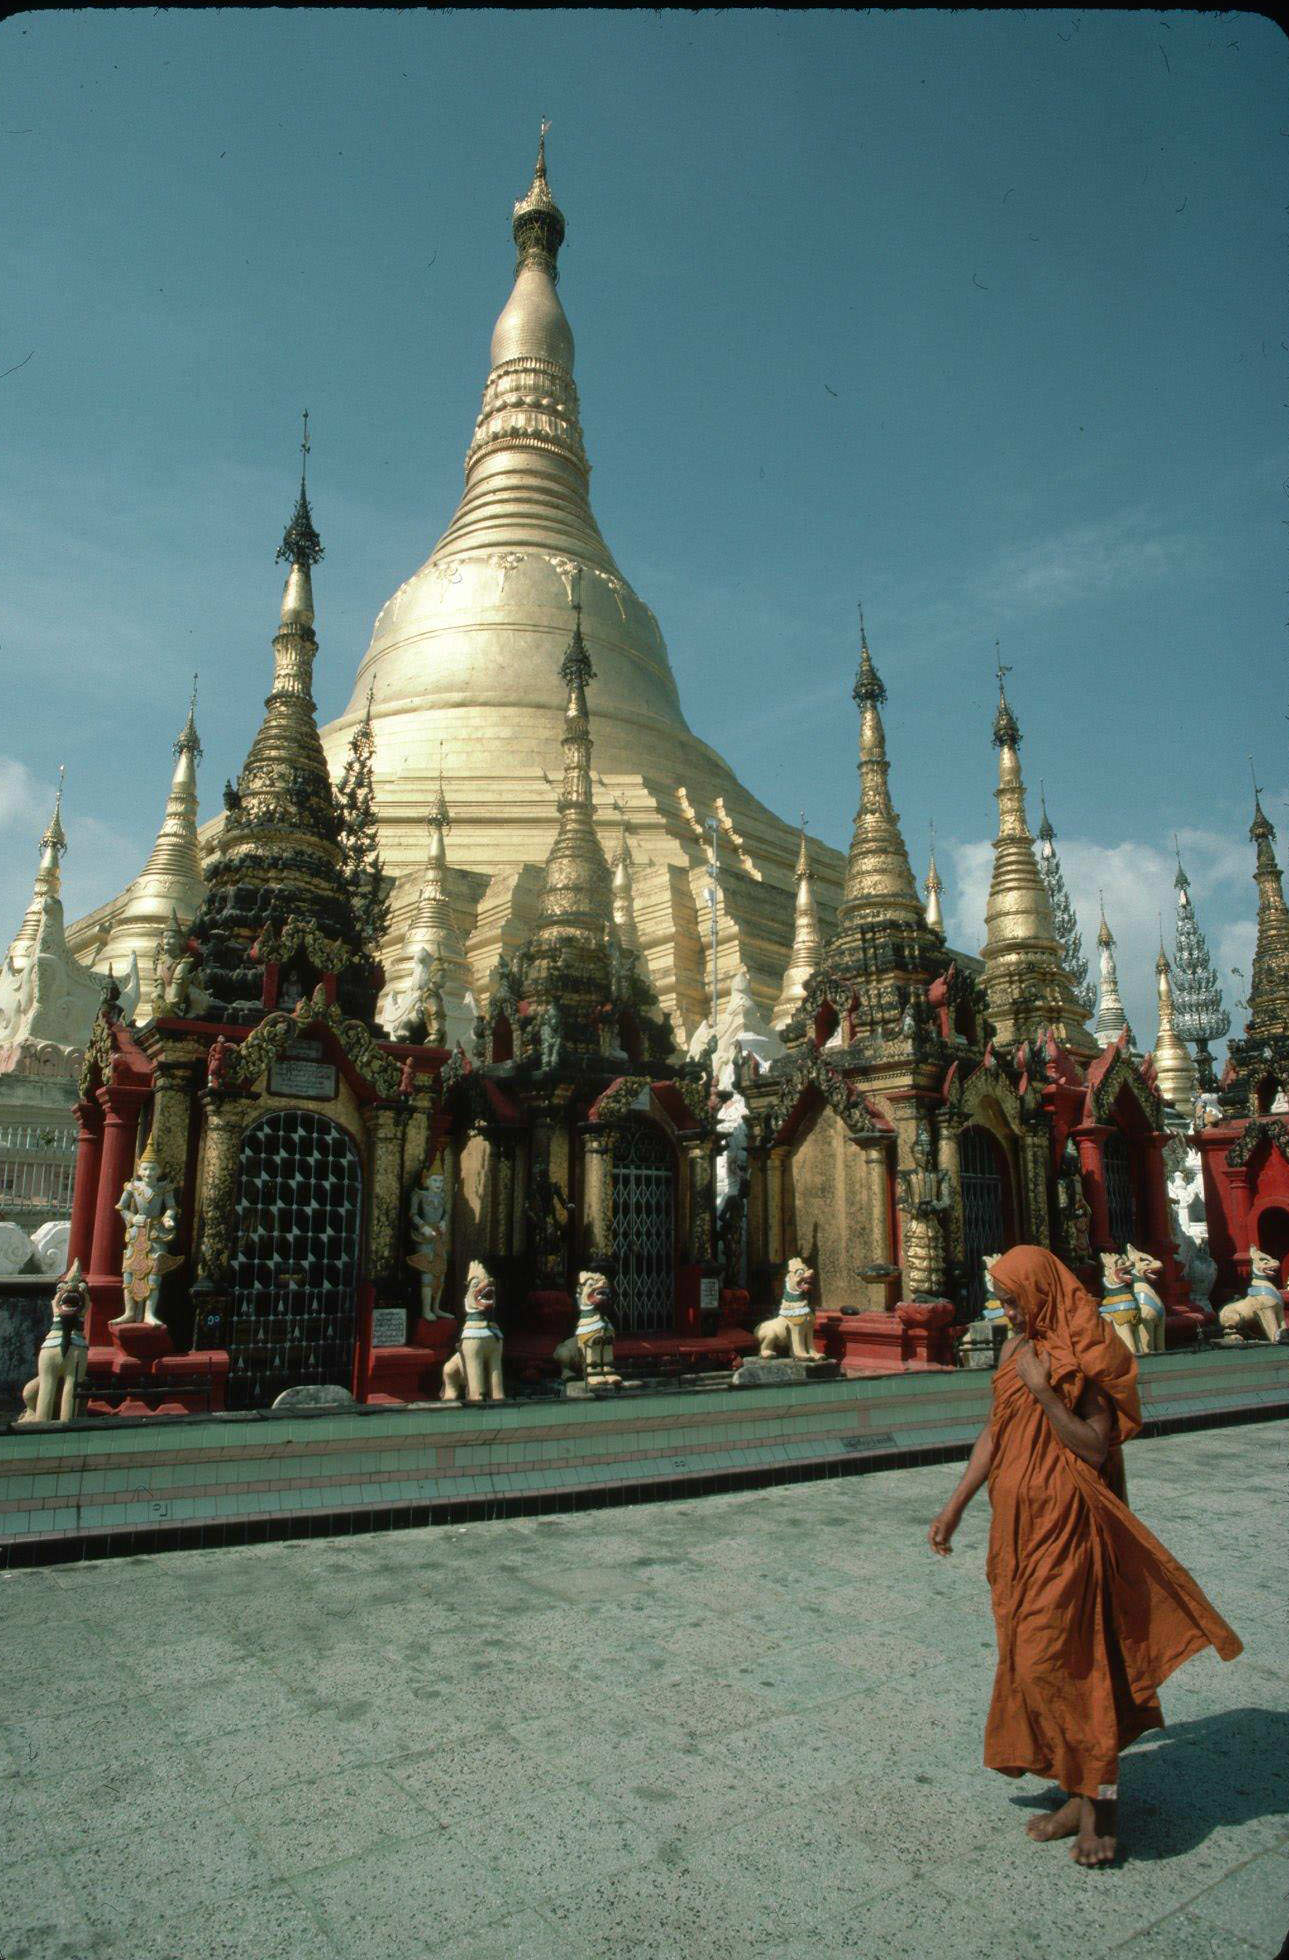 Buddhist Monk Walks by Shwe Dagon Pagoda